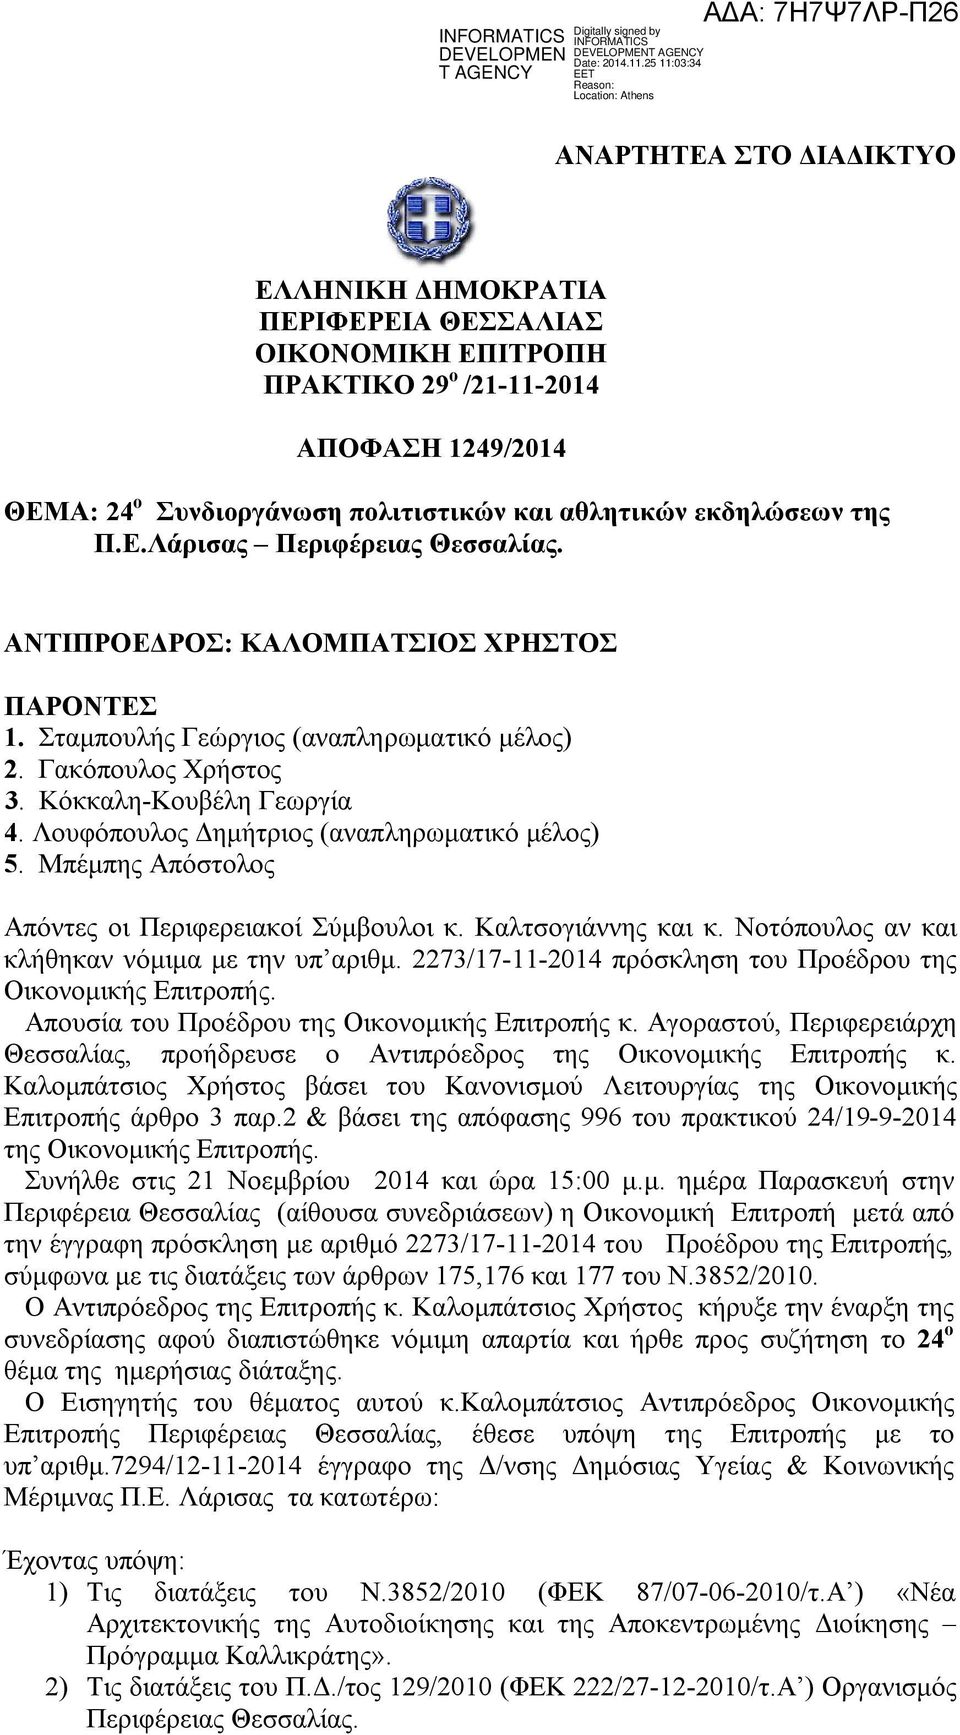 Μπέμπης Απόστολος Απόντες οι Περιφερειακοί Σύμβουλοι κ. Καλτσογιάννης και κ. Νοτόπουλος αν και κλήθηκαν νόμιμα με την υπ αριθμ. 2273/17-11-2014 πρόσκληση του Προέδρου της Οικονομικής Επιτροπής.